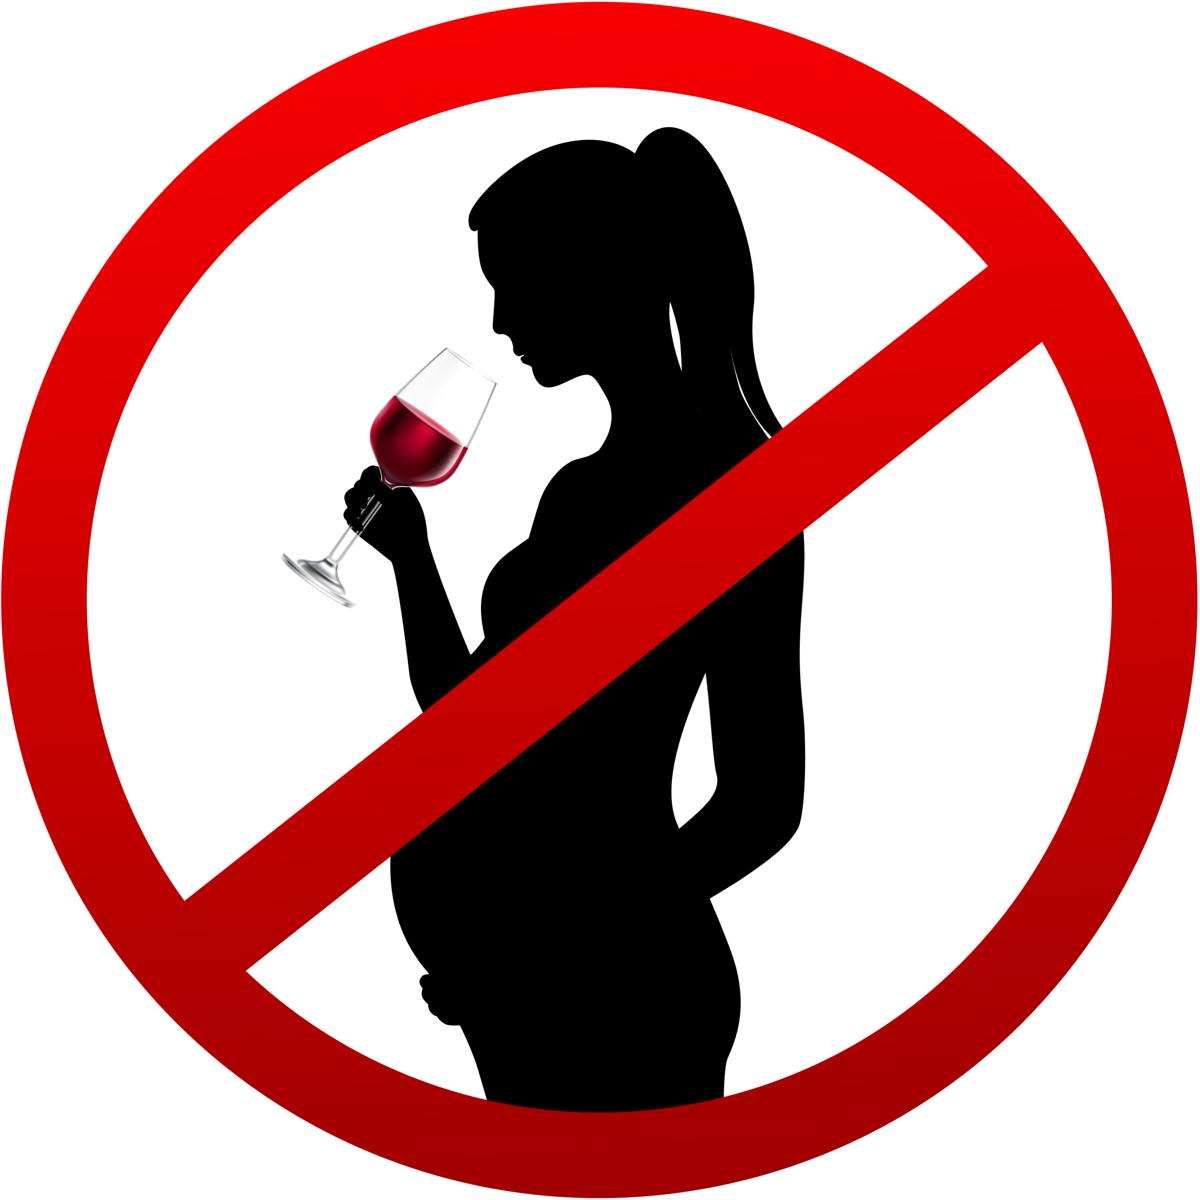 Die Silhouette einer schwangeren Frau, die aus einem Weinglas trinkt. Darüber liegt ein Verbots-Symbol in Form eines rot umrandeten Kreises mit einem diagonalen Strich durch die Mitte. Alkoholkonsum während der Schwangerschaft ist strikt verboten, da dadurch FASD ausgelöst werden kann.